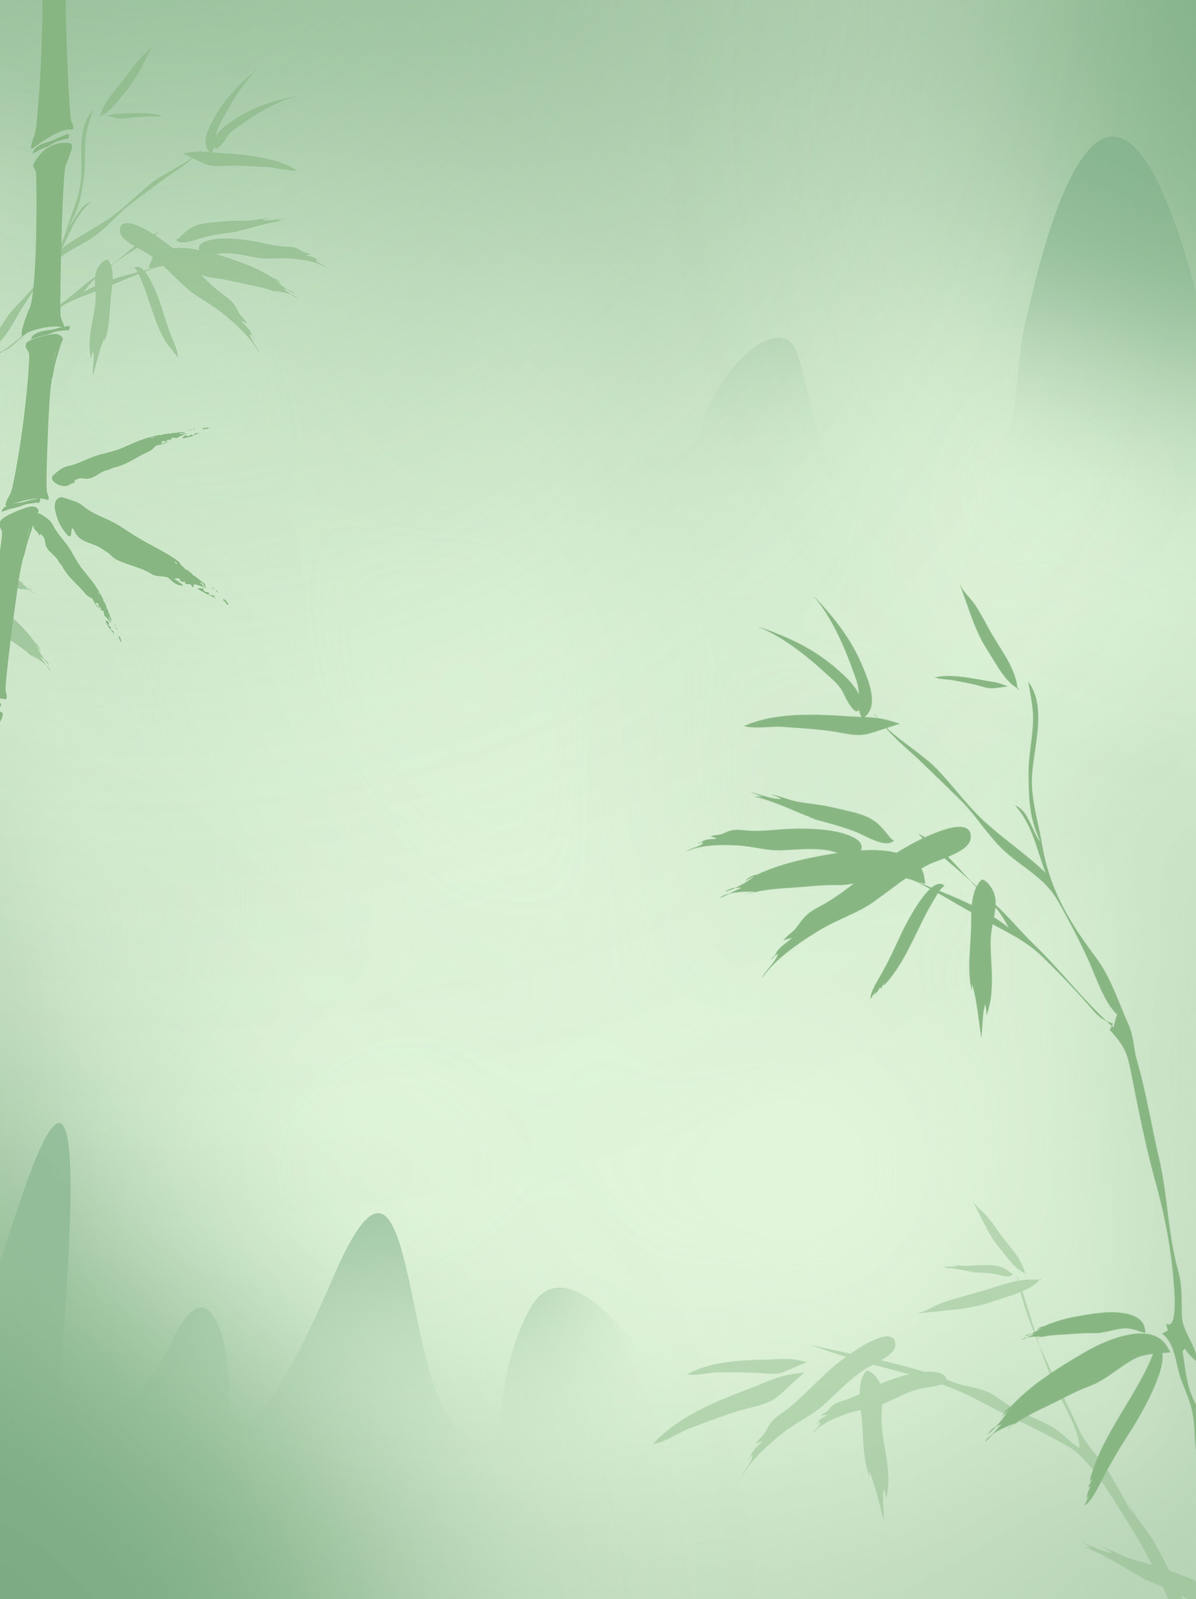 绿色 淡雅 小清新 竹子 风景 背景